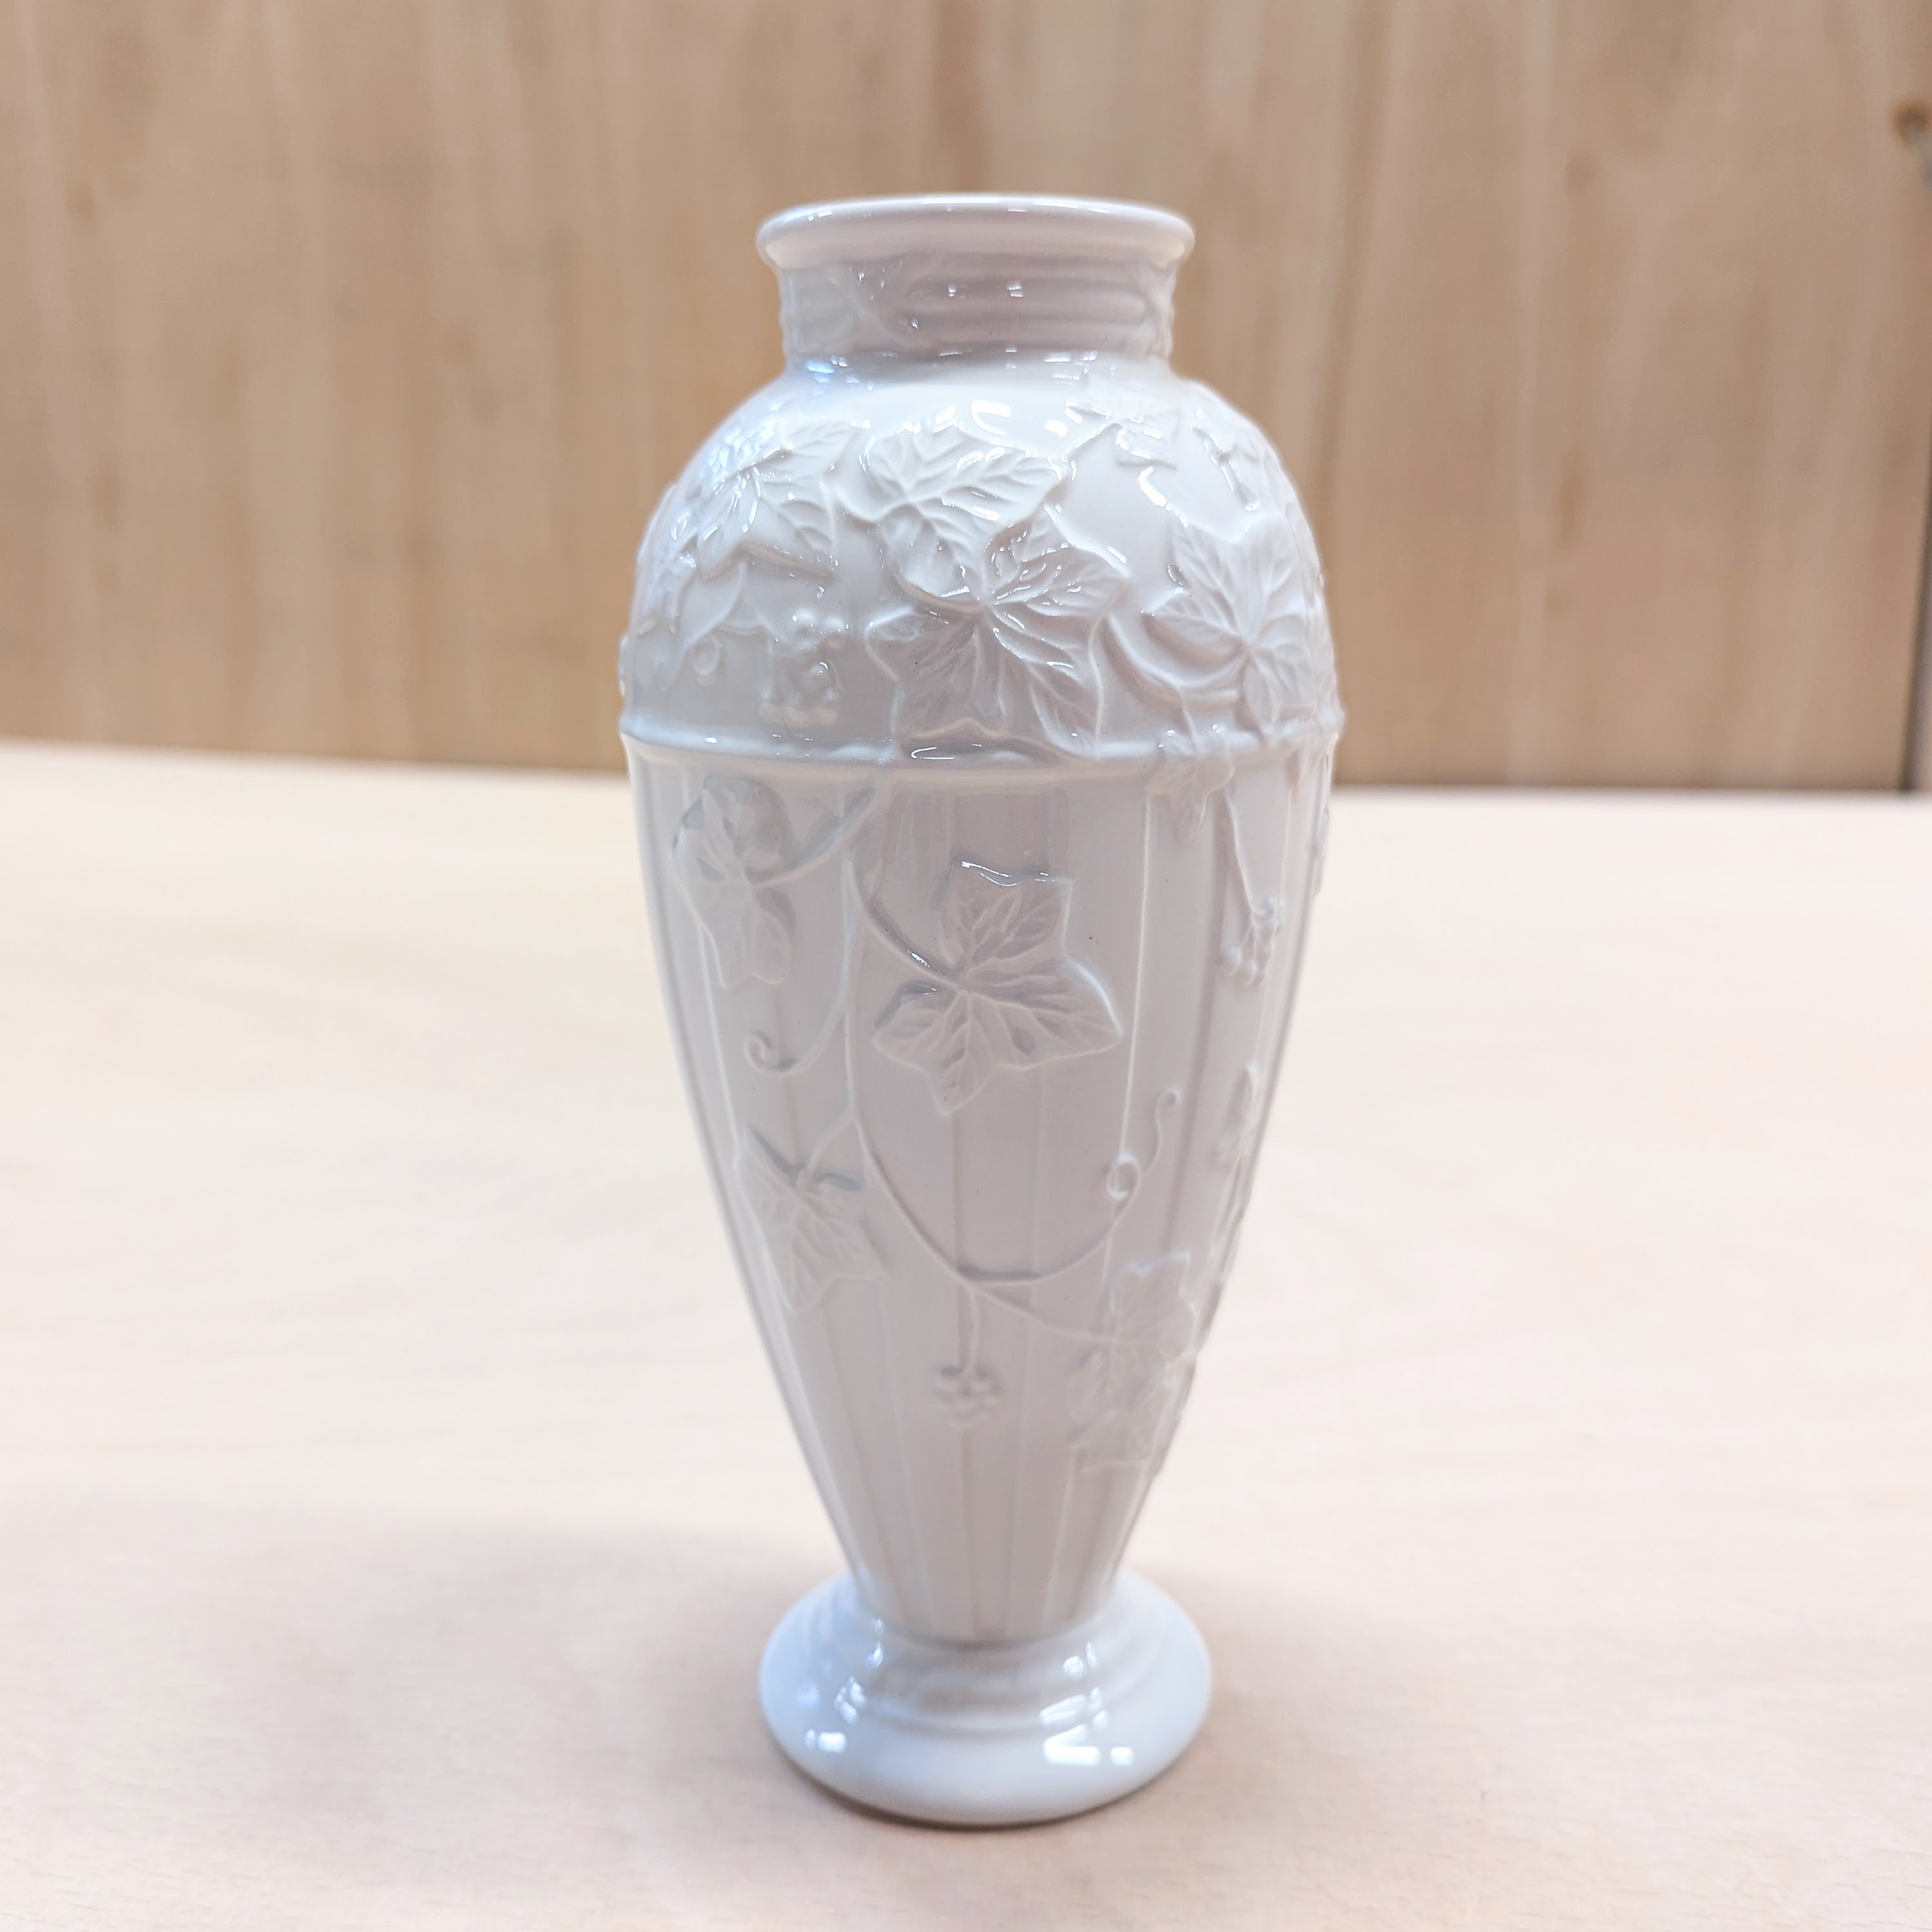 Full sized image of vase